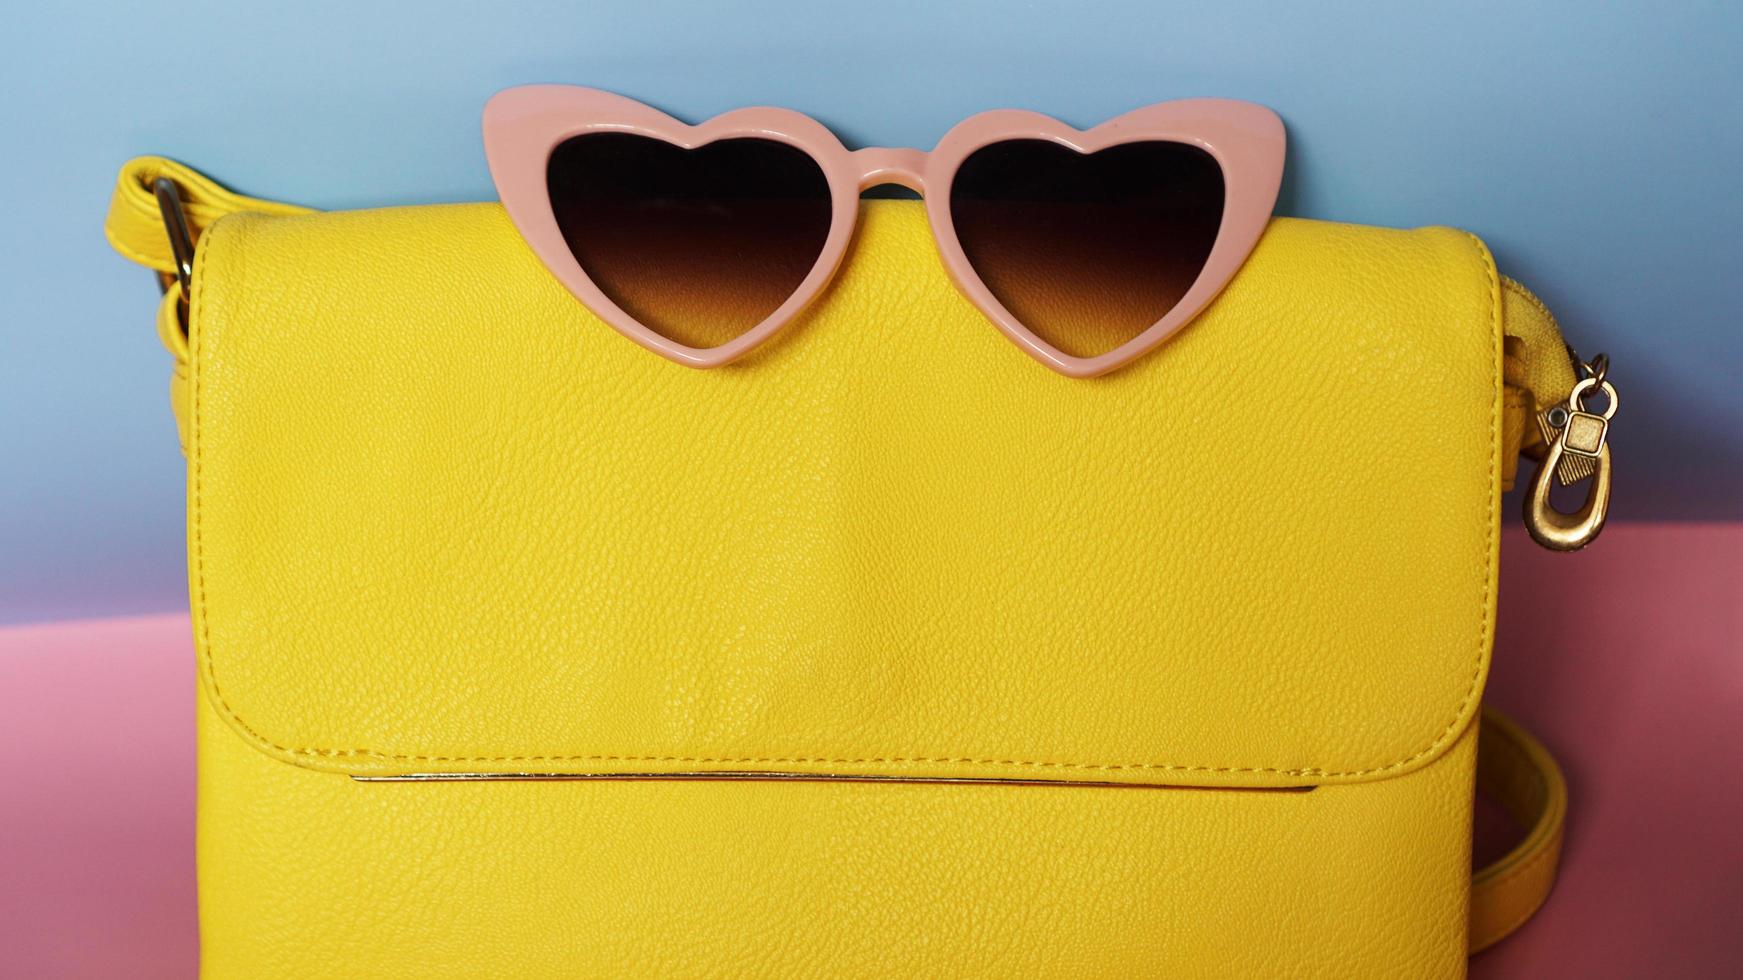 borsa gialla e occhiali da sole a forma di cuore su sfondo rosa e blu foto